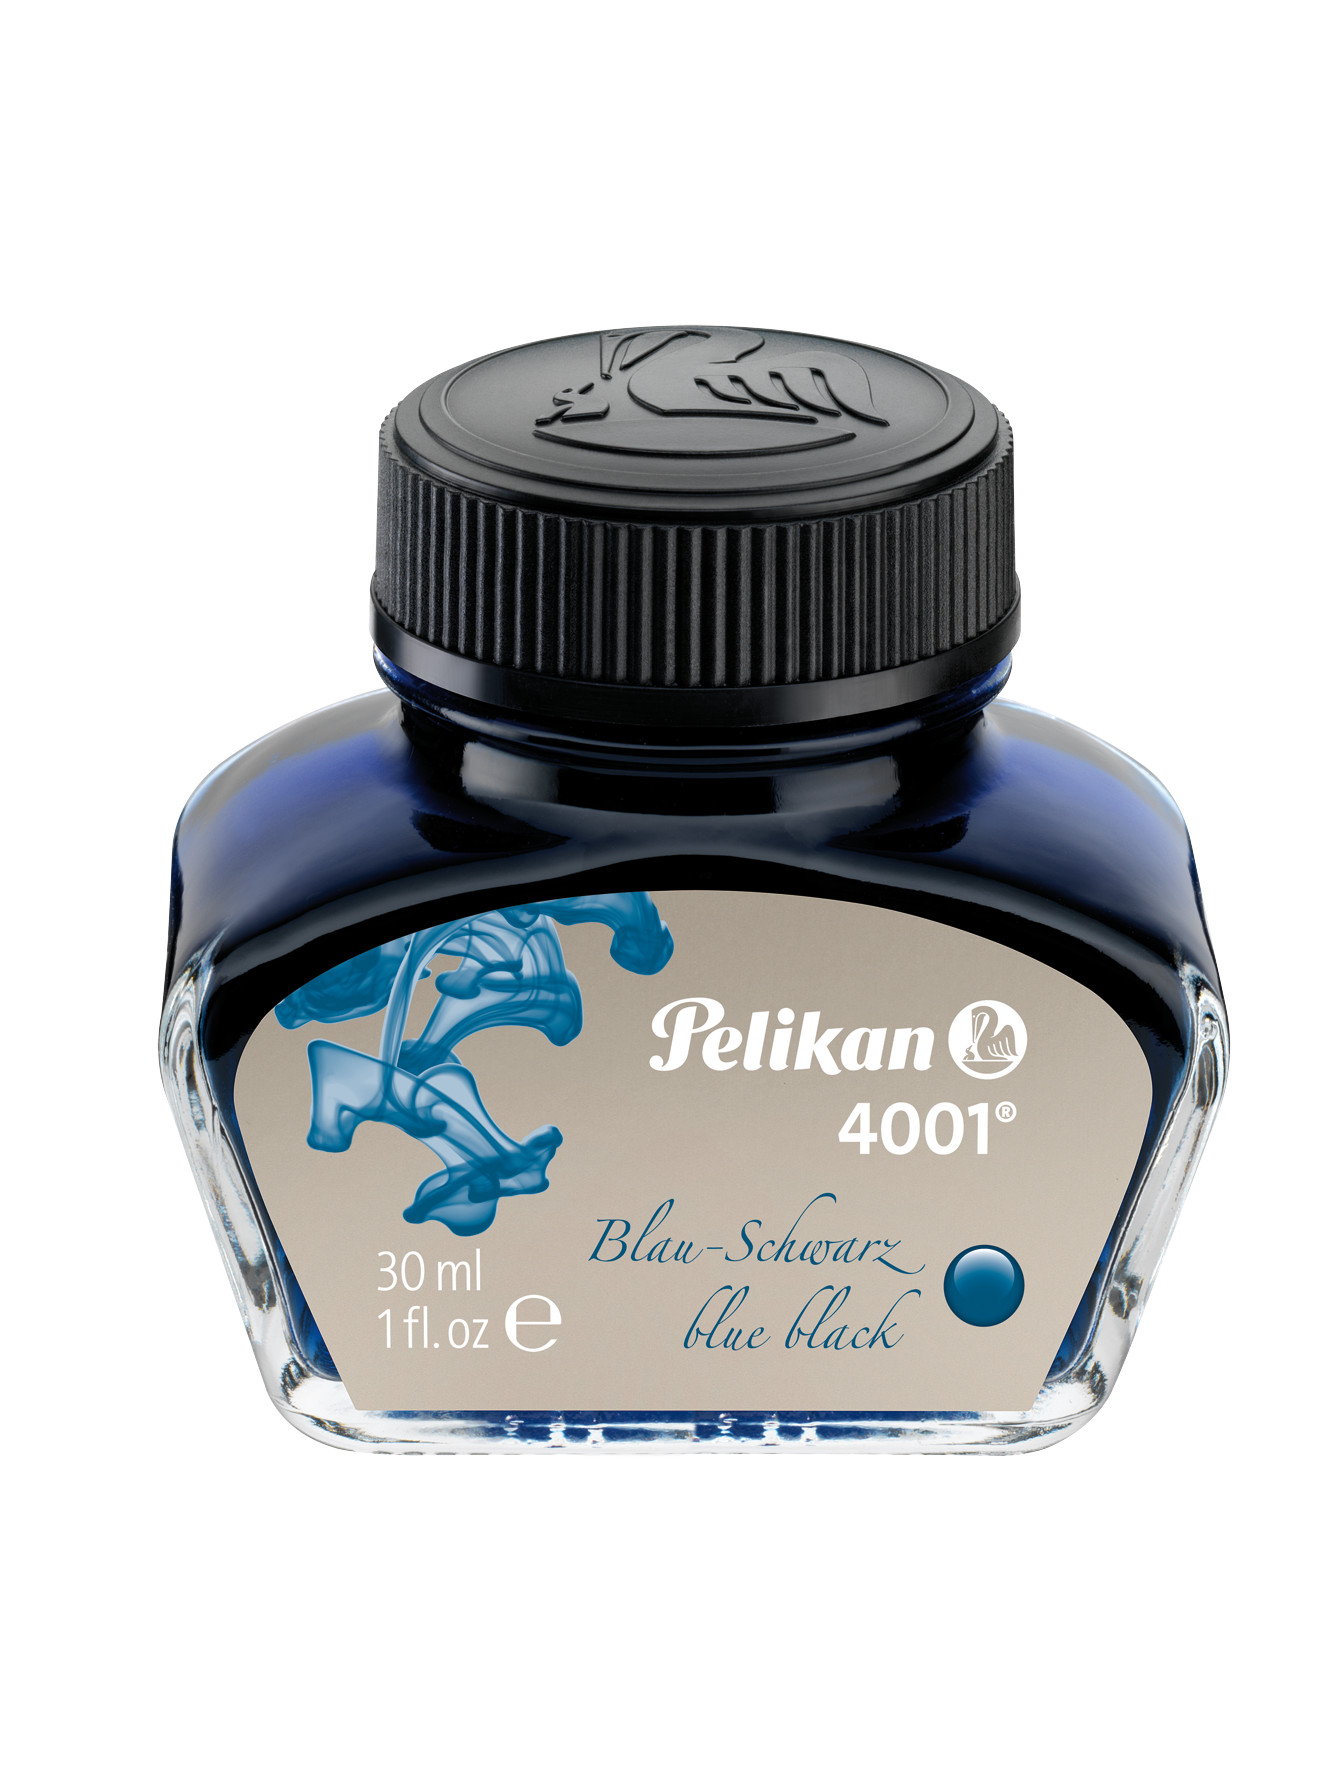 Pelikan 4001 Blue Black 30ml  